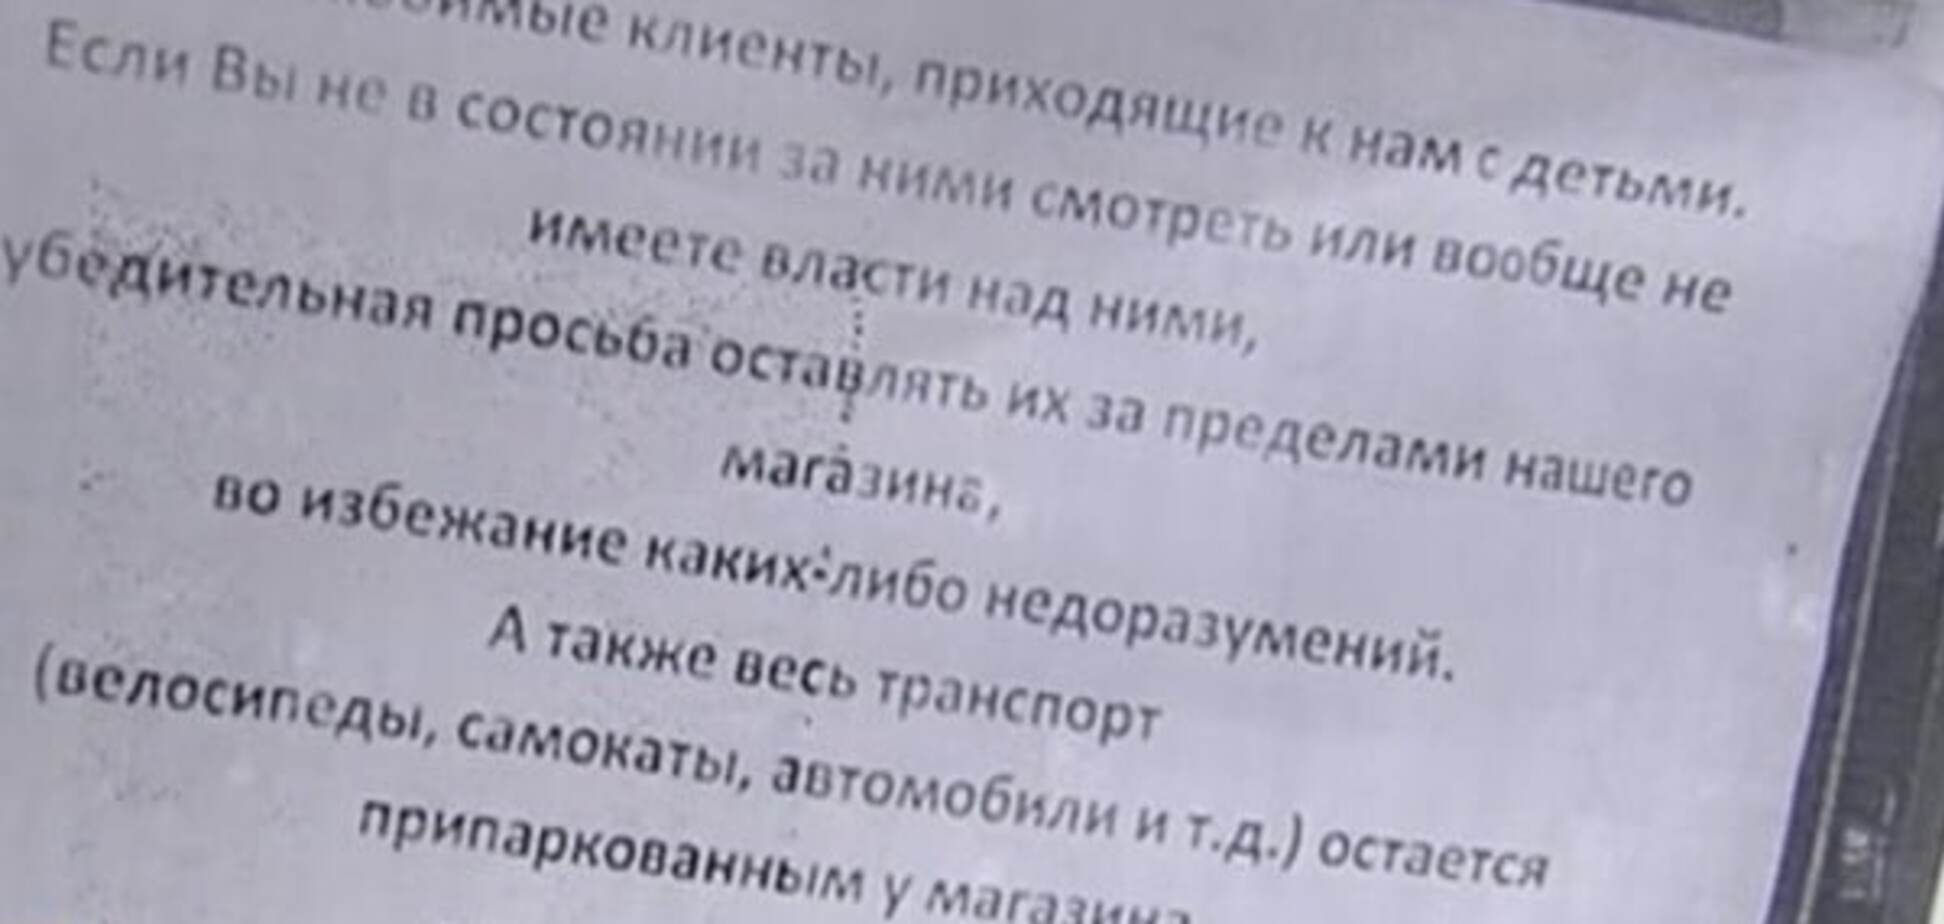 Странное объявление: в Киеве магазин запретил вход с детьми